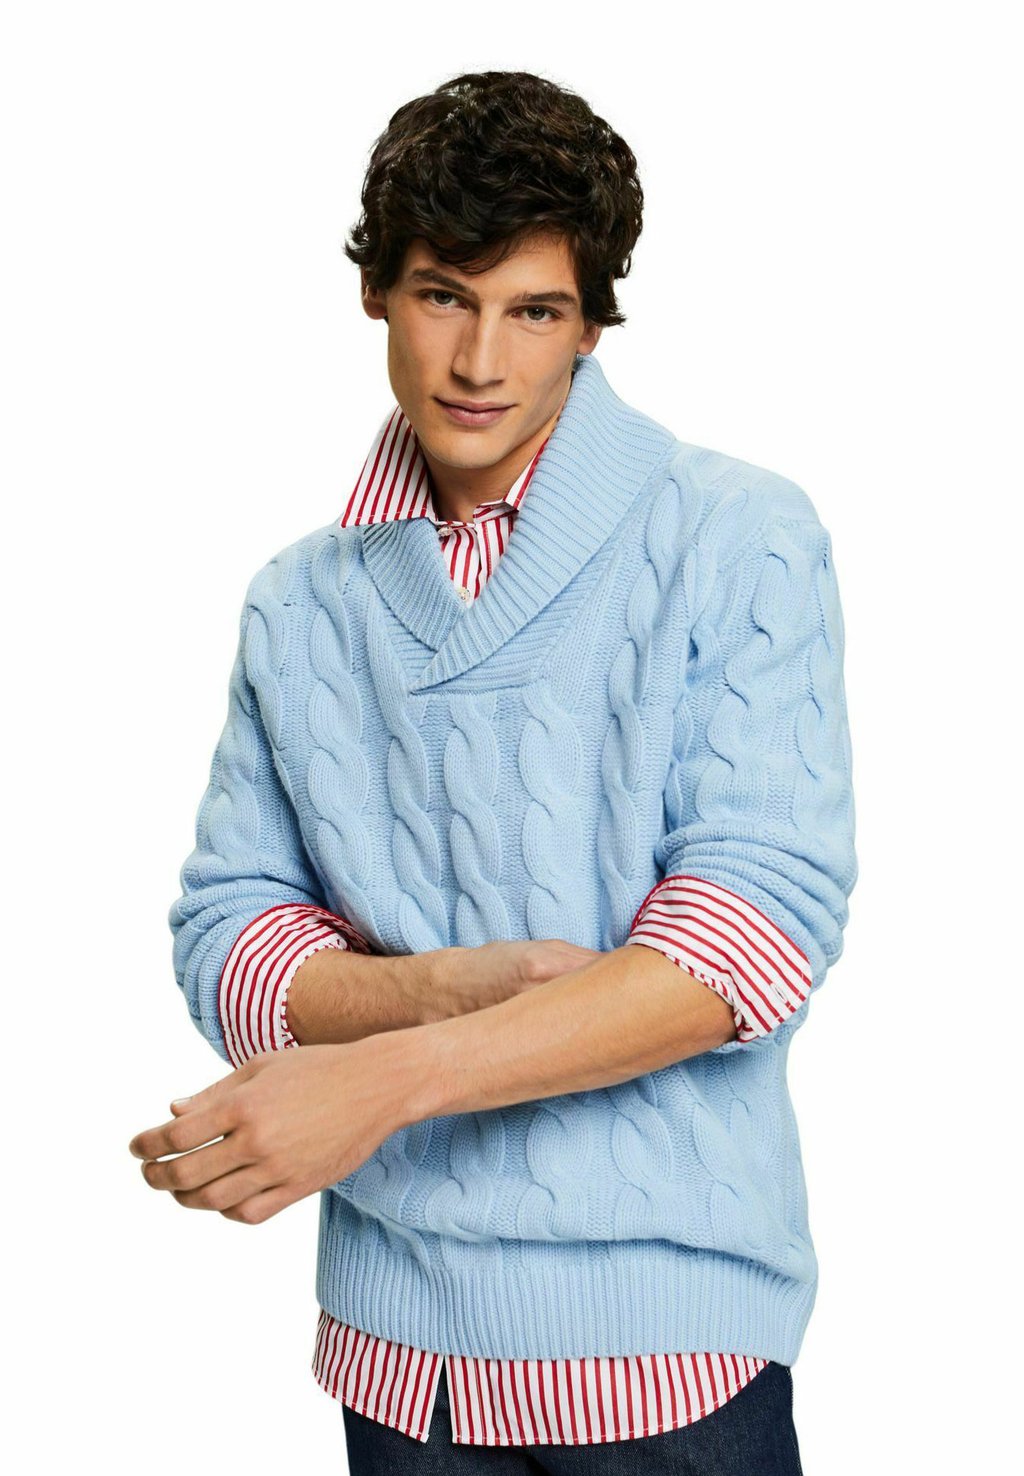 Вязаный свитер Esprit Collection, цвет light blue lavender футболка базовая nos v nk esprit цвет light blue